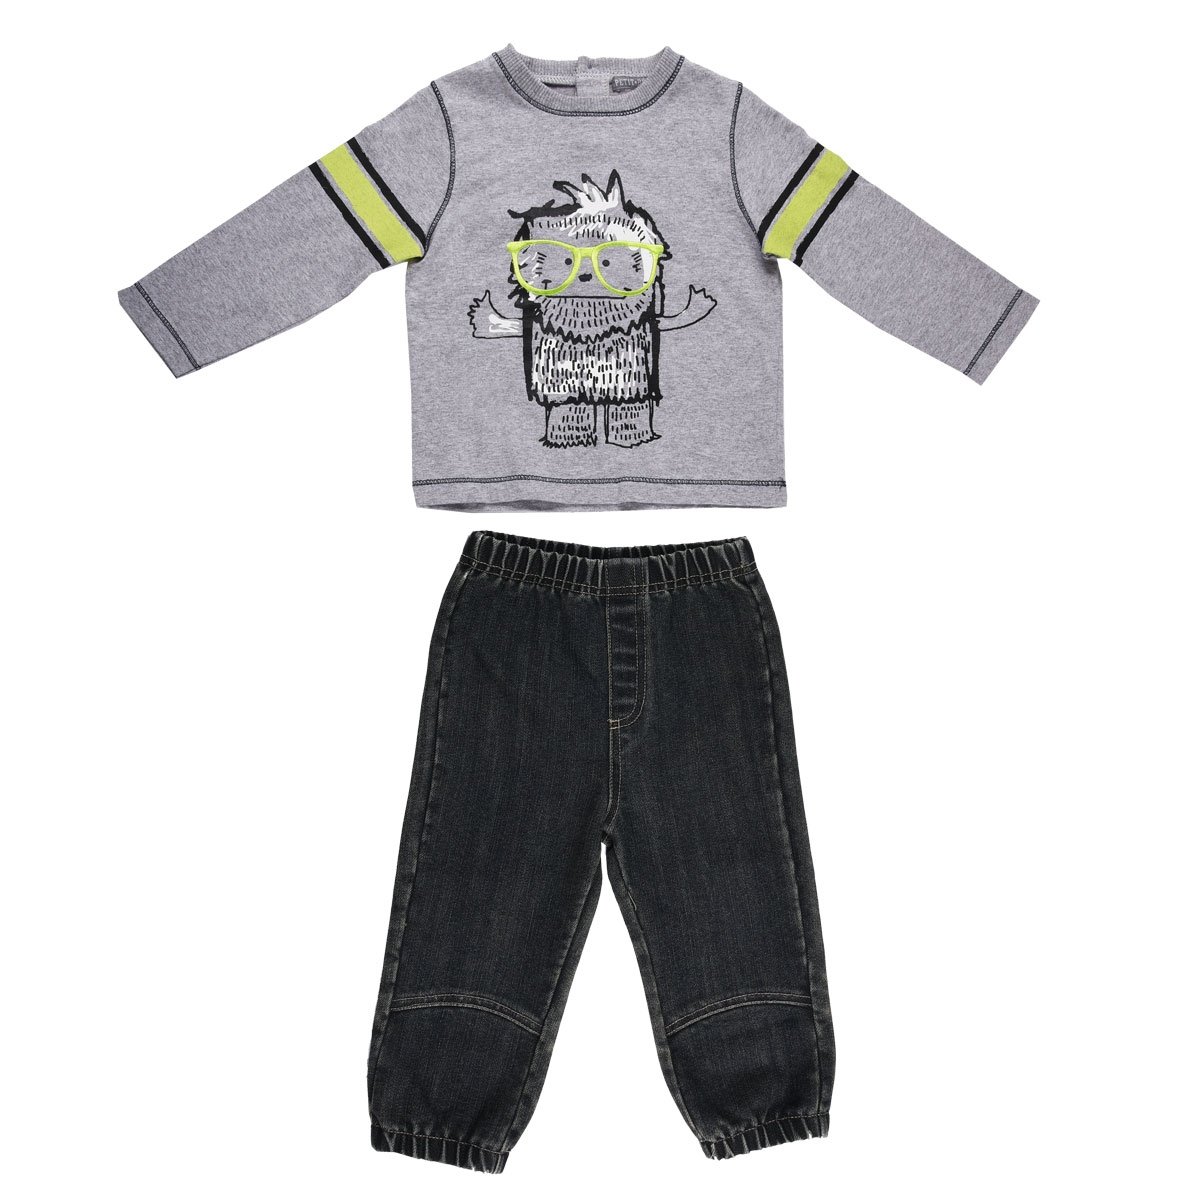 Baby-Set für Jungen, T-Shirt + Hose, Timéo, Größe – 12 Monate (80 cm)